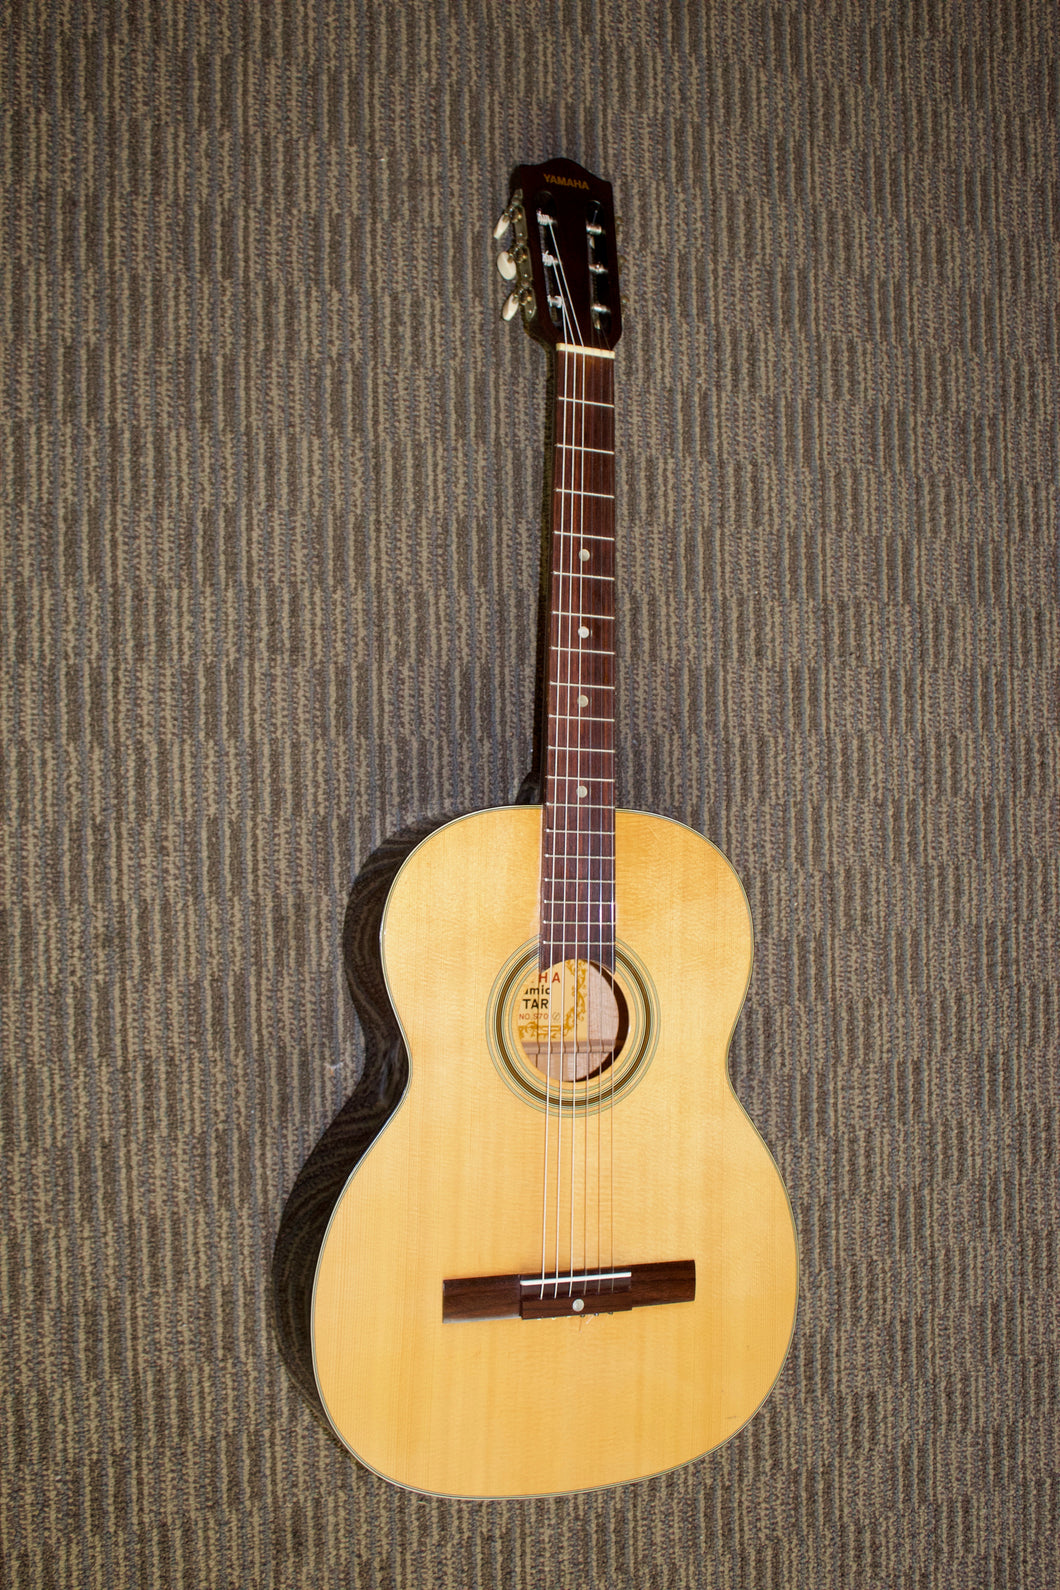 Yamaha S70 Dynamic Guitar c.1965